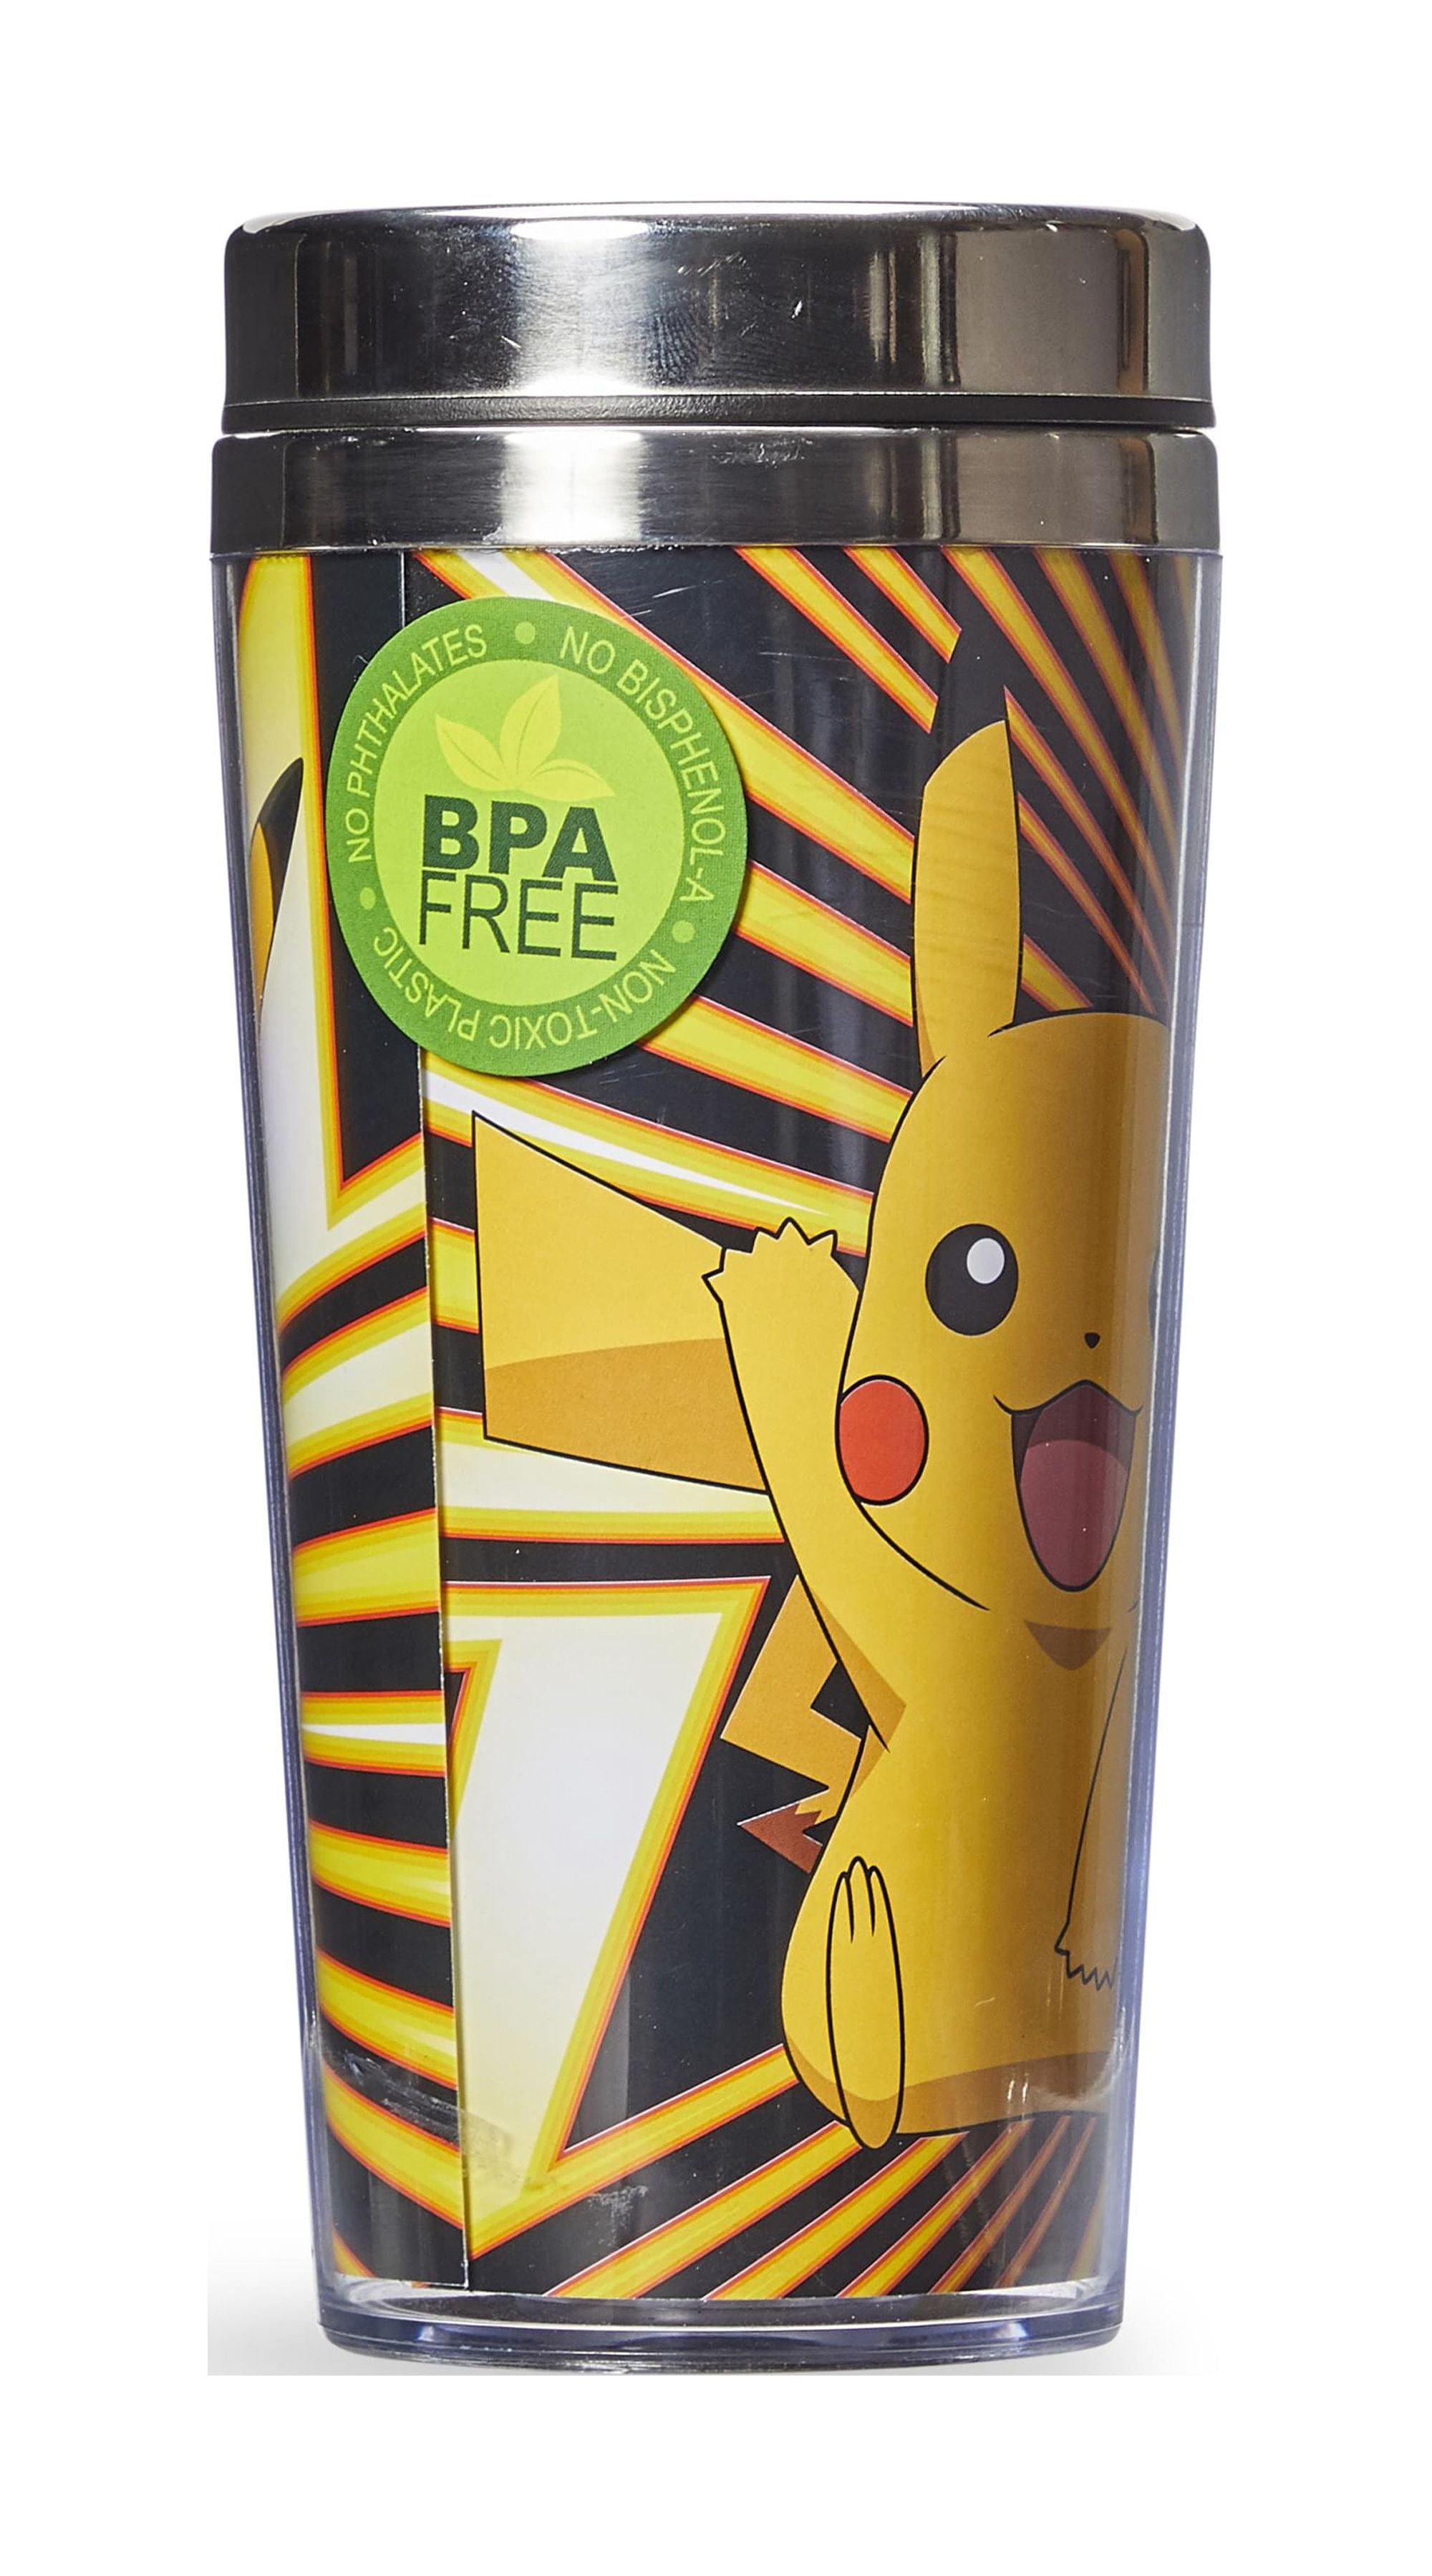 Gourde Pikachu - Pokémon - noir plastique sans bpa 724 ml